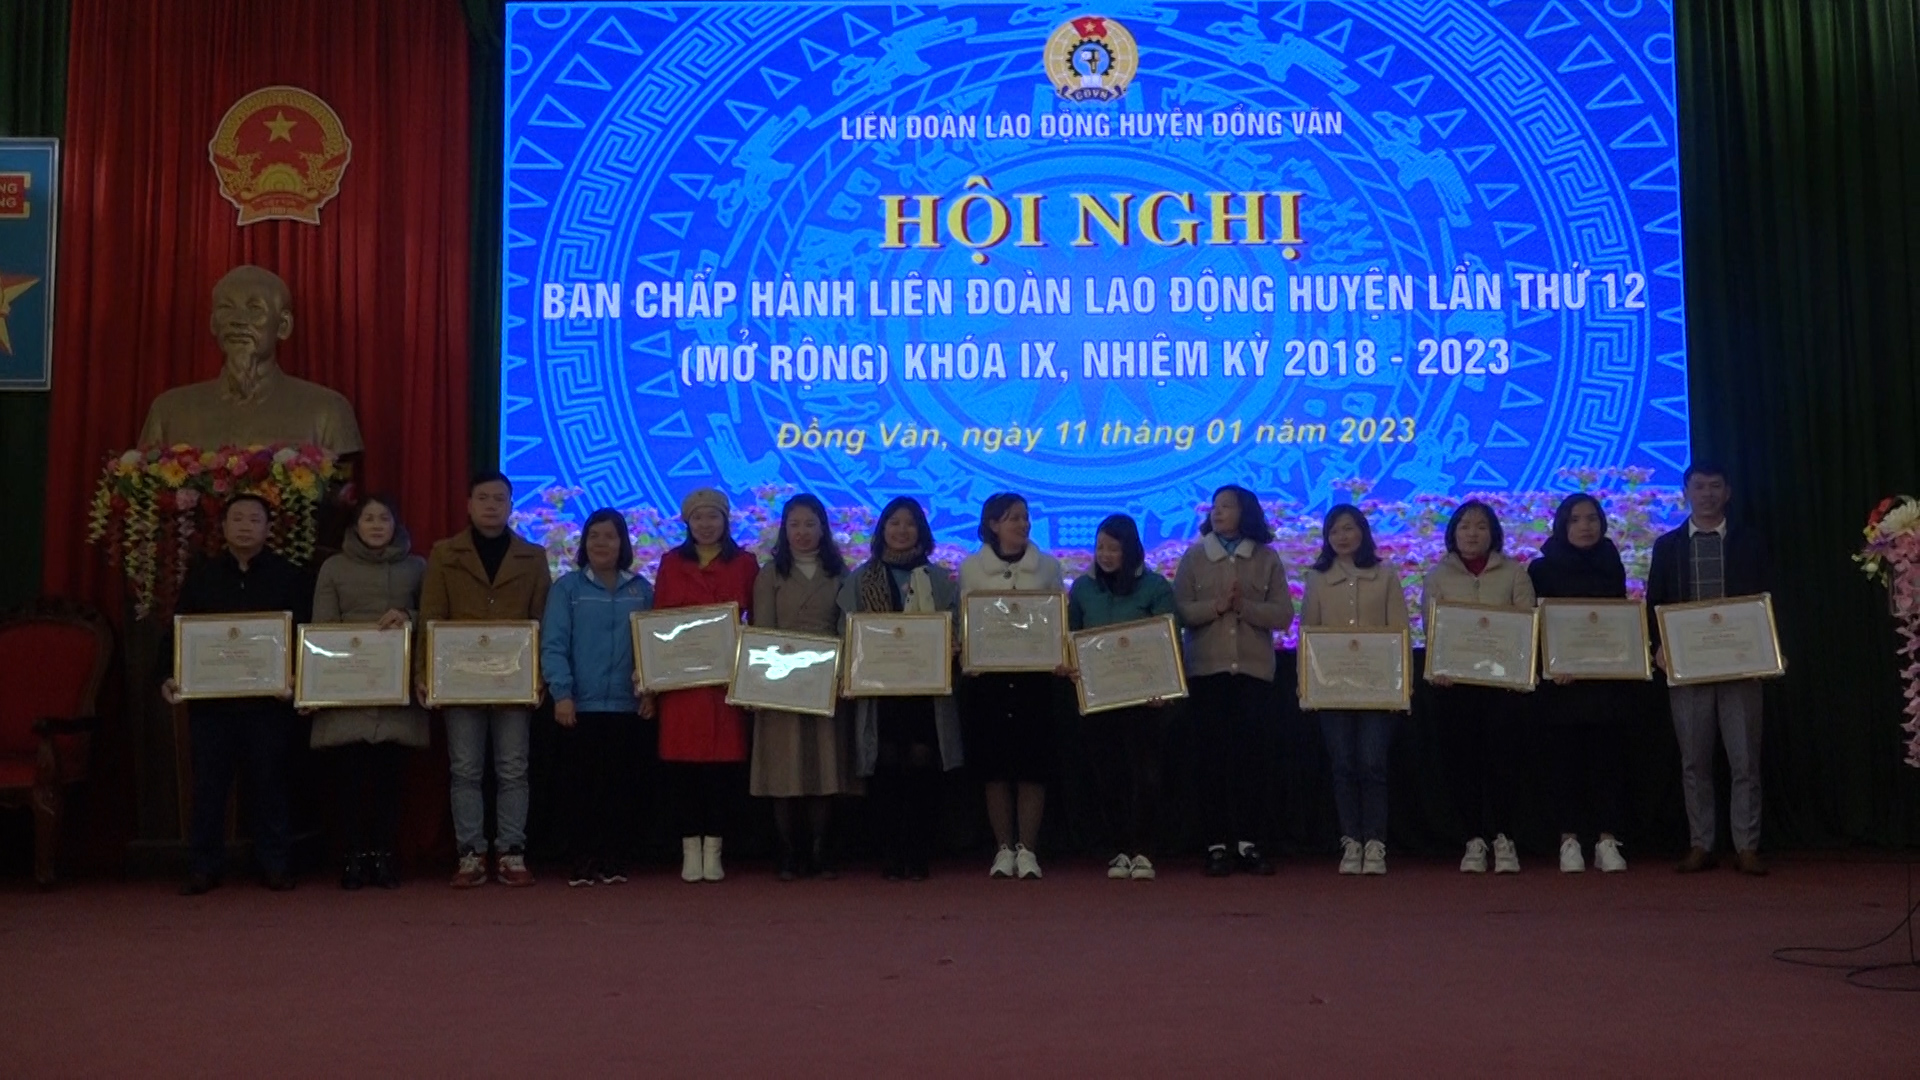 Hội nghị Liên đoàn Lao động huyện Đồng Văn lần thứ 12 khóa IX, nhiệm kỳ 2018 – 2023